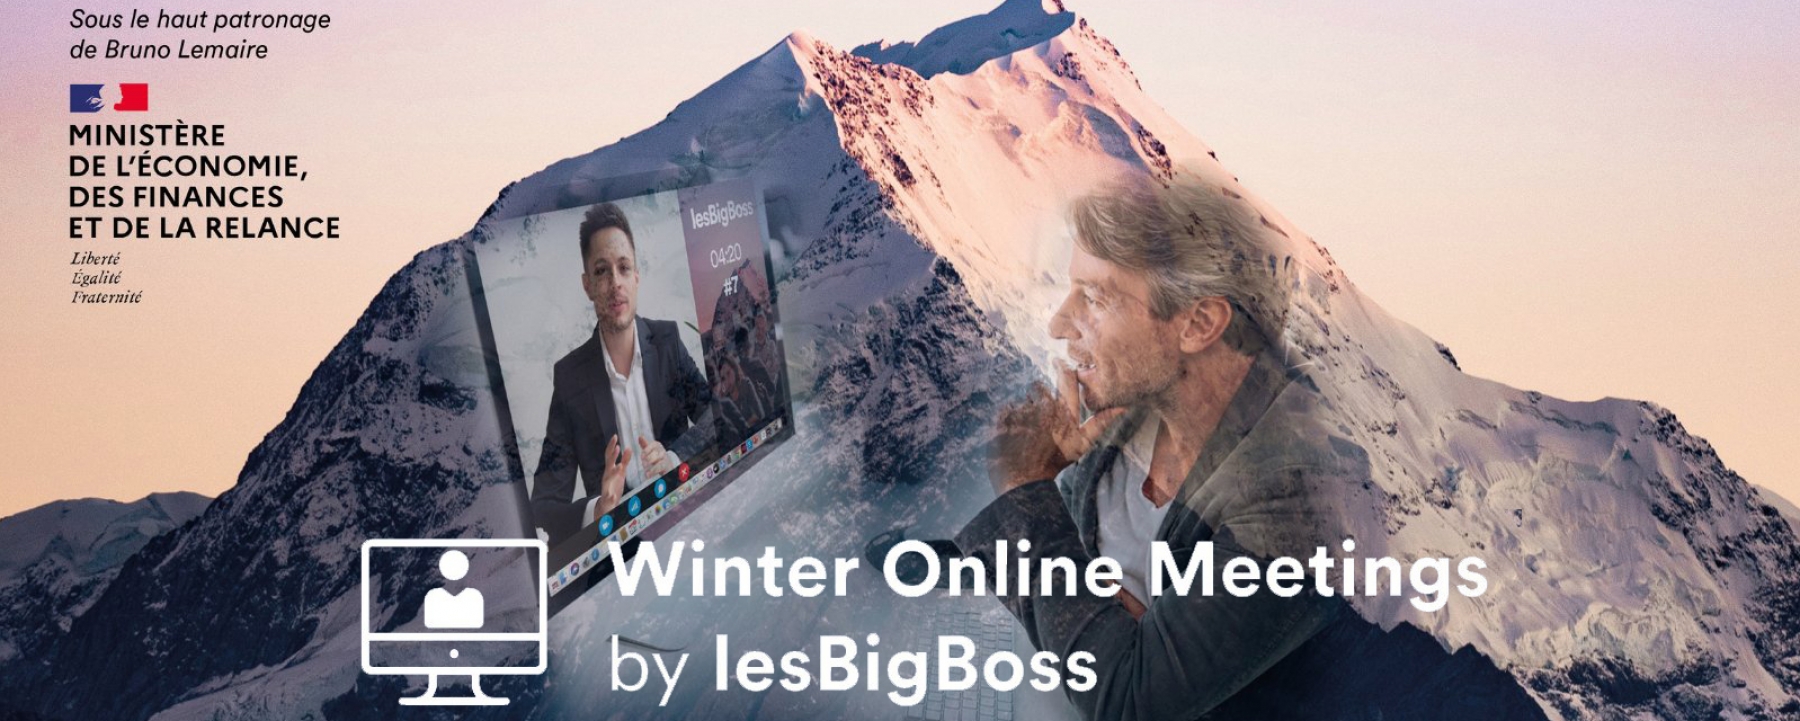 Winter Online Meetings, un événement organisé par LesBigBoss le vendredi 11 décembre